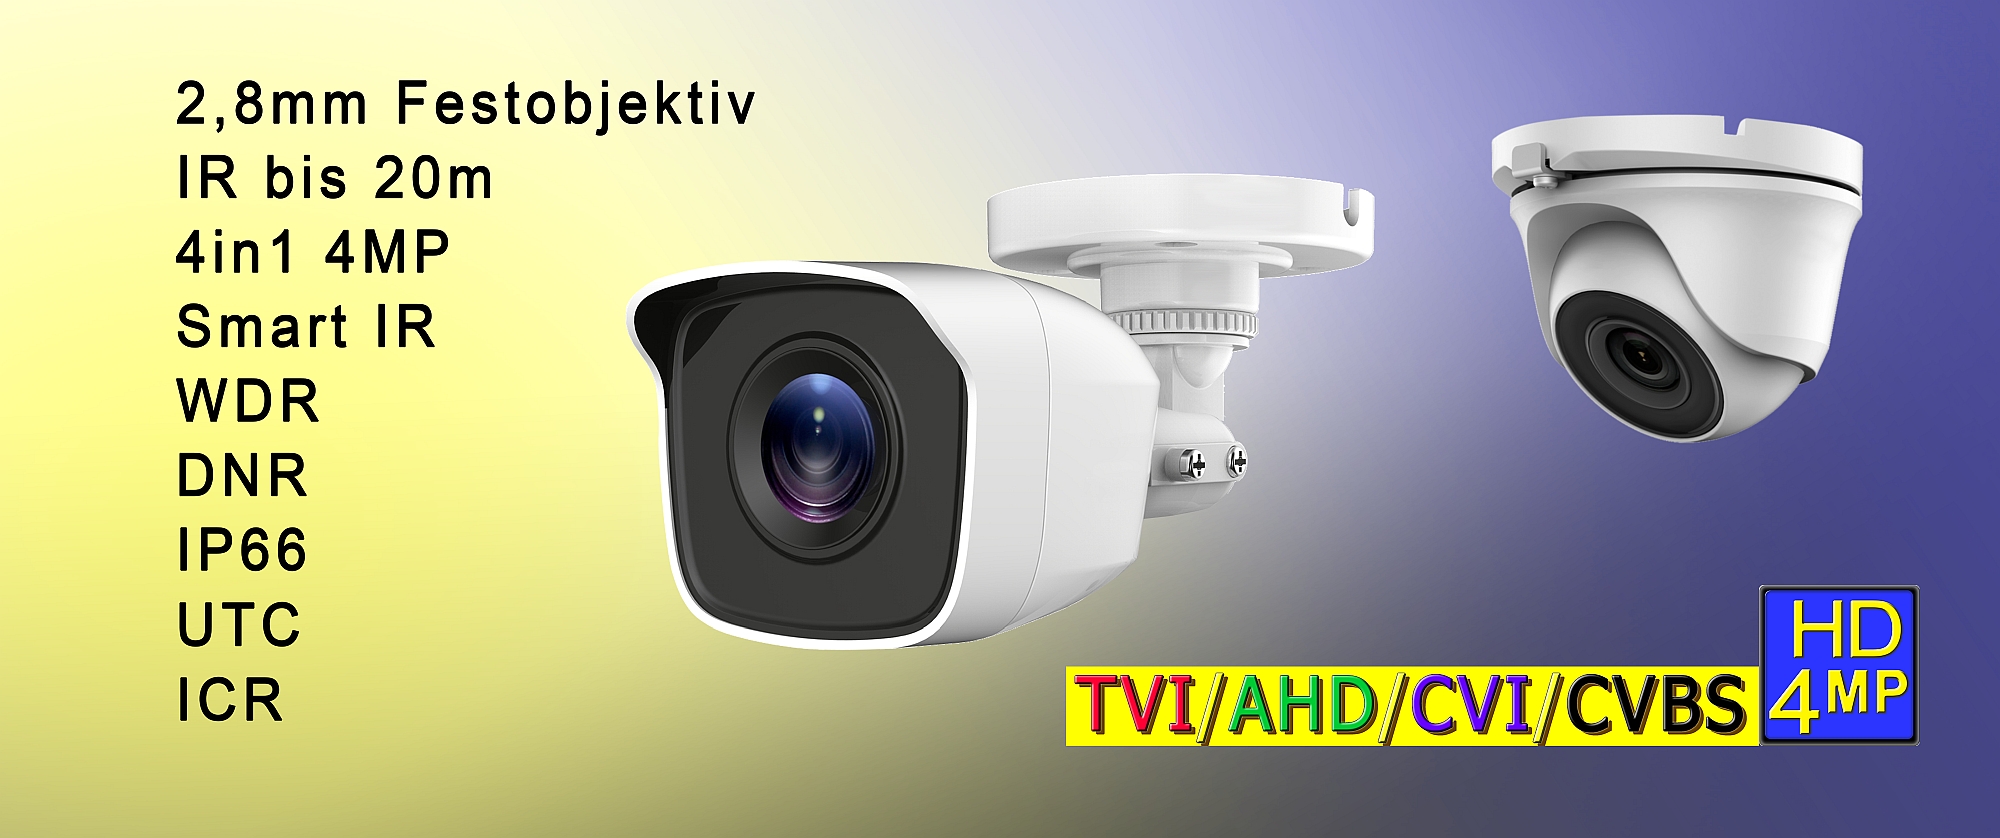 Festobjektiv 2,8mm TVI/AHD/CVI/CVBS